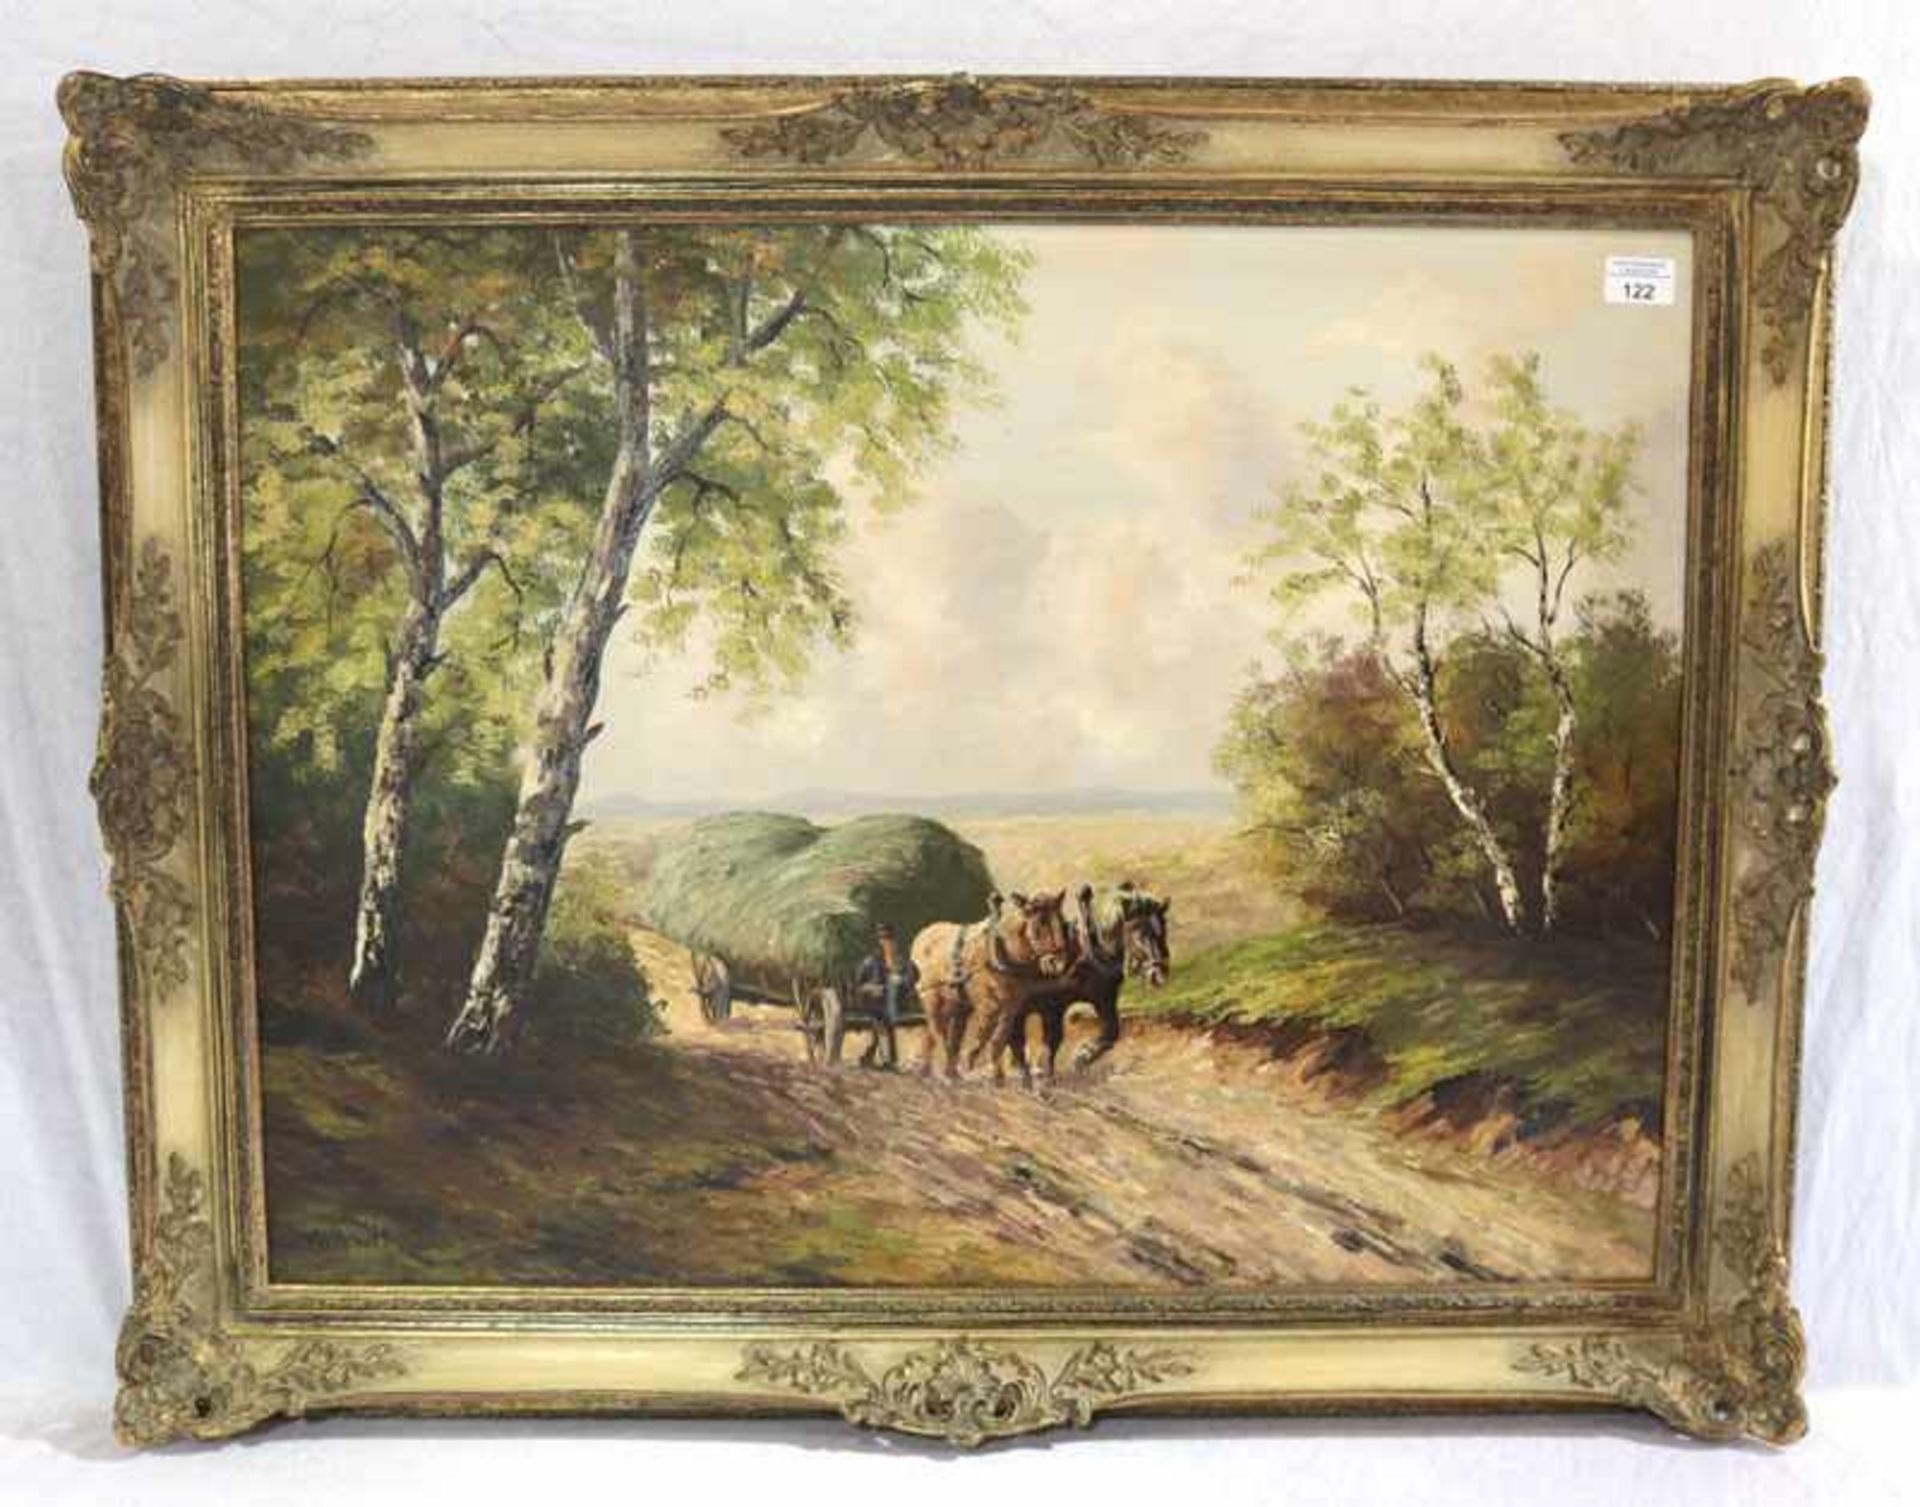 Gemälde ÖL/Hartfaser 'Pferdefuhrwerk in Landschafts-Szenerie', undeutlich signiert, gerahmt, incl.